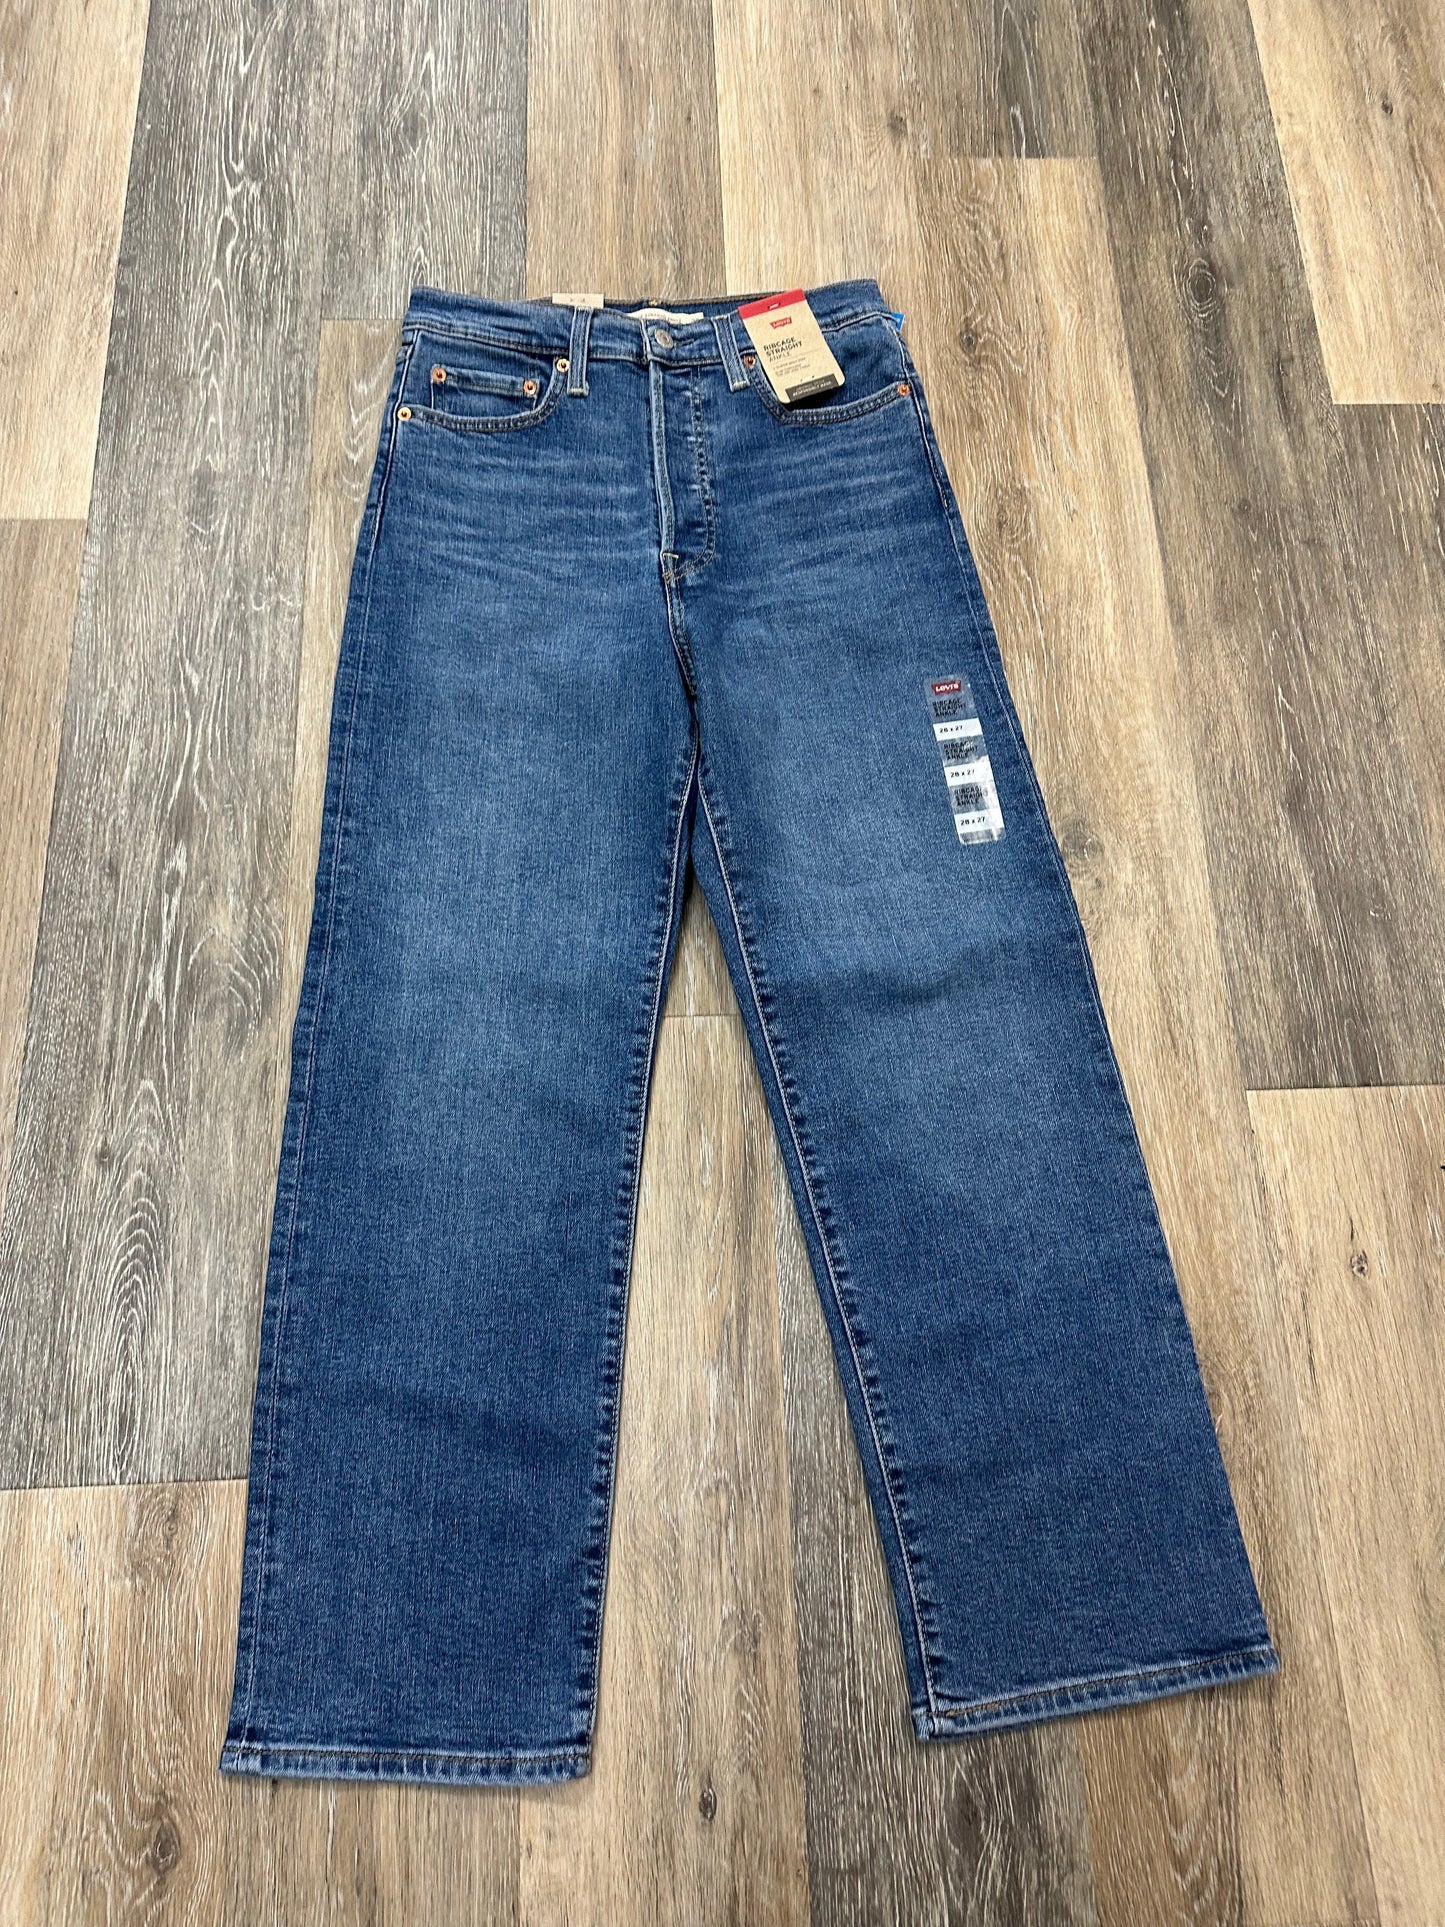 Blue Denim Jeans Straight Levis, Size 6